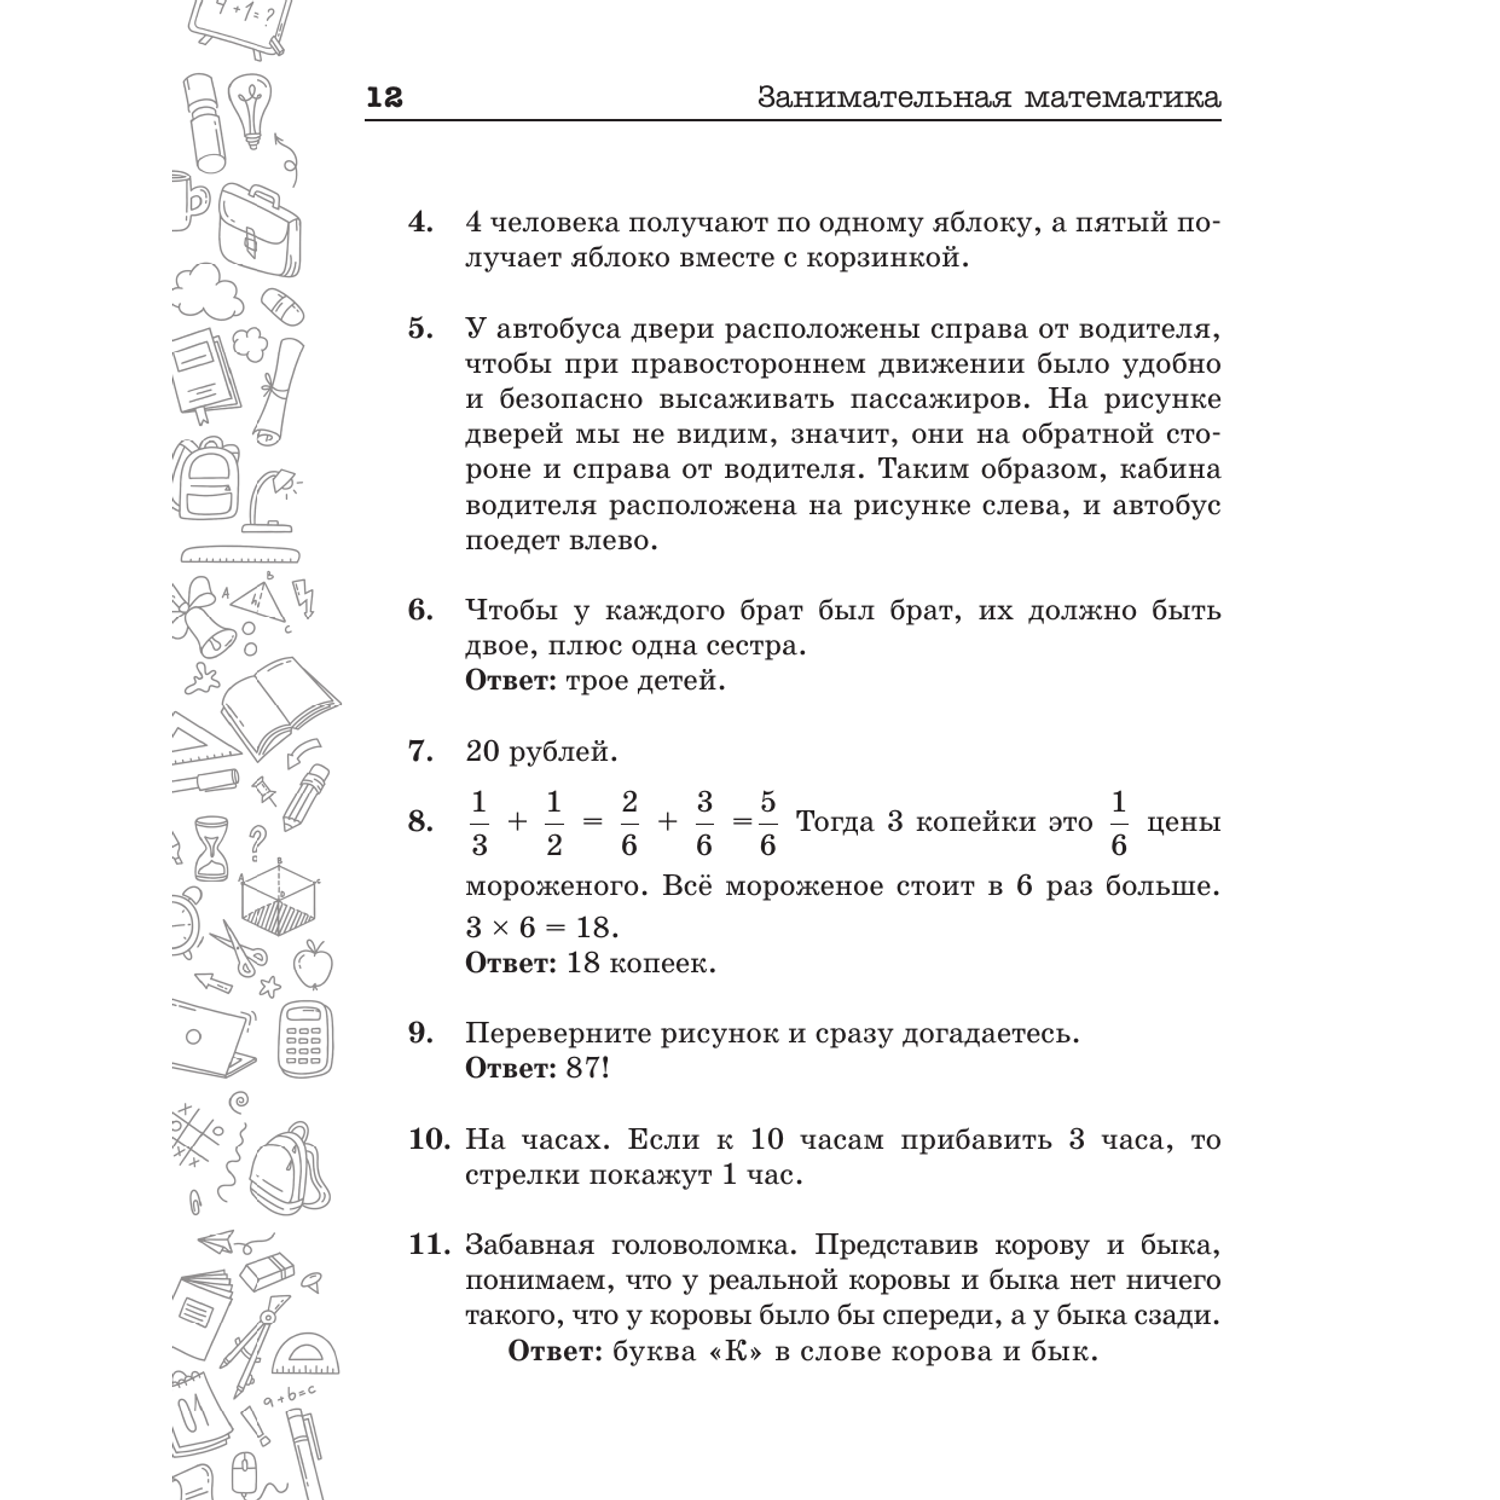 Книги АСТ Занимательная математика для детей и взрослых - фото 13